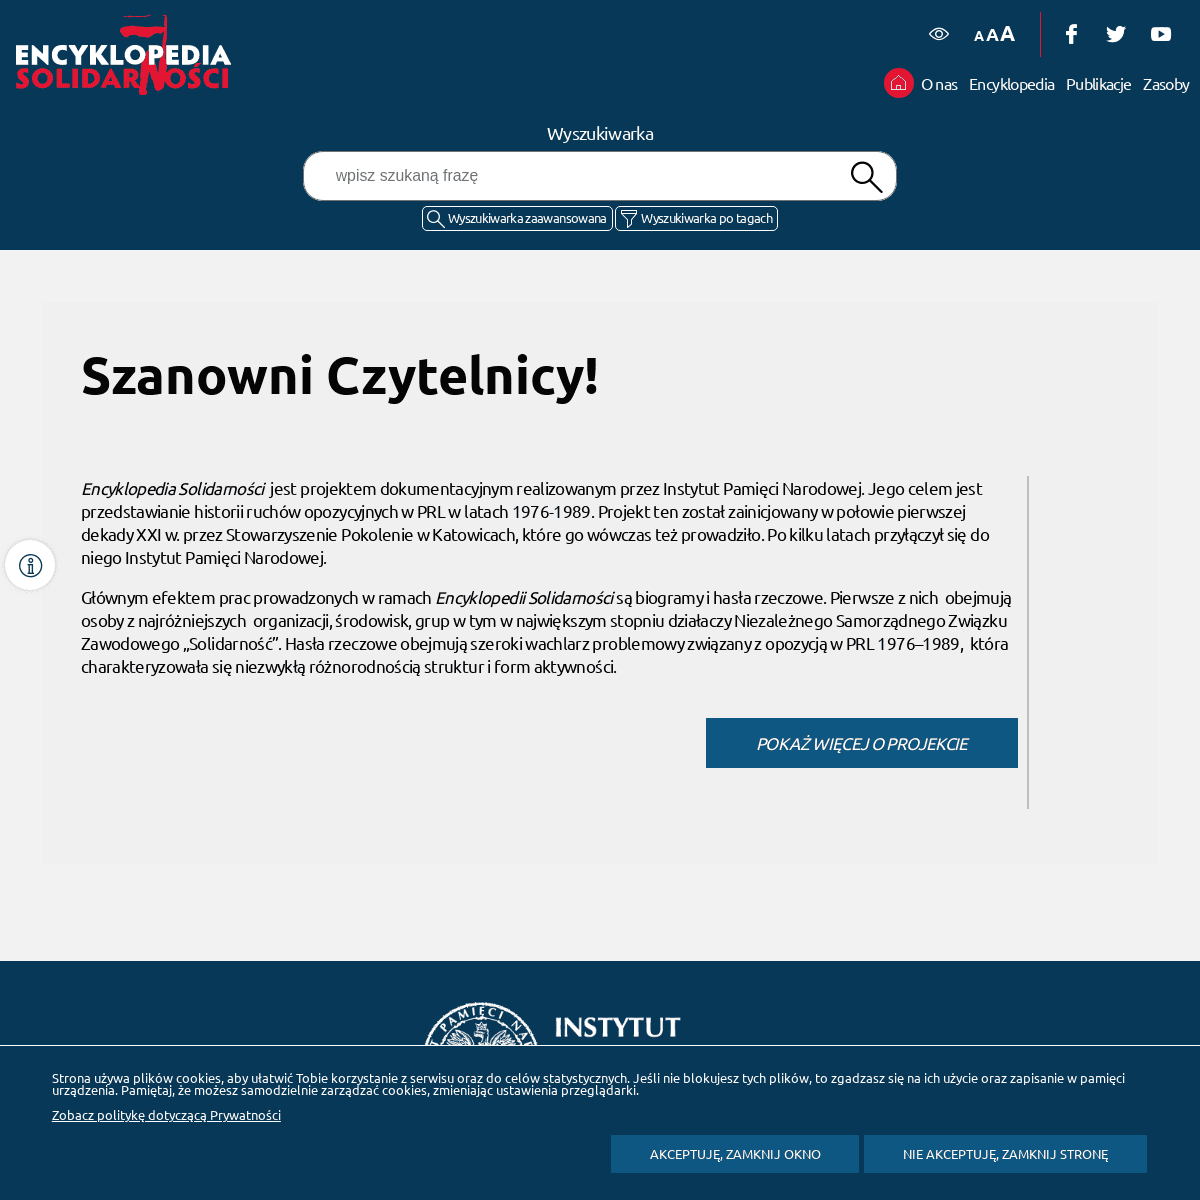 A complete backup of https://encyklopedia-solidarnosci.pl